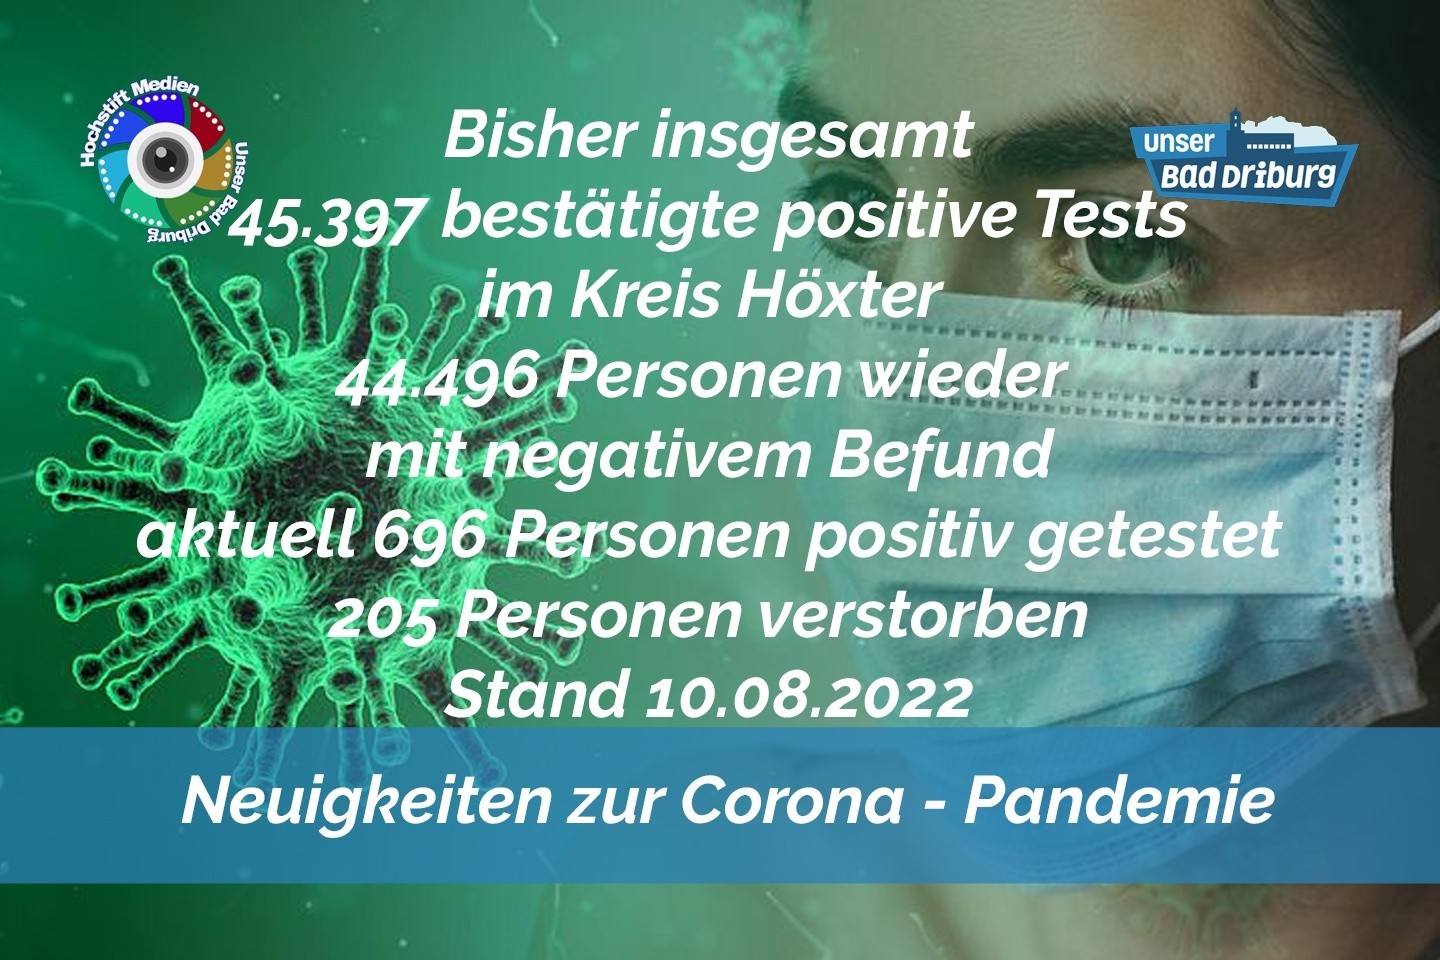 Update 10. August 2022: 131 weitere amtlich positive Tests im Kreis Höxter